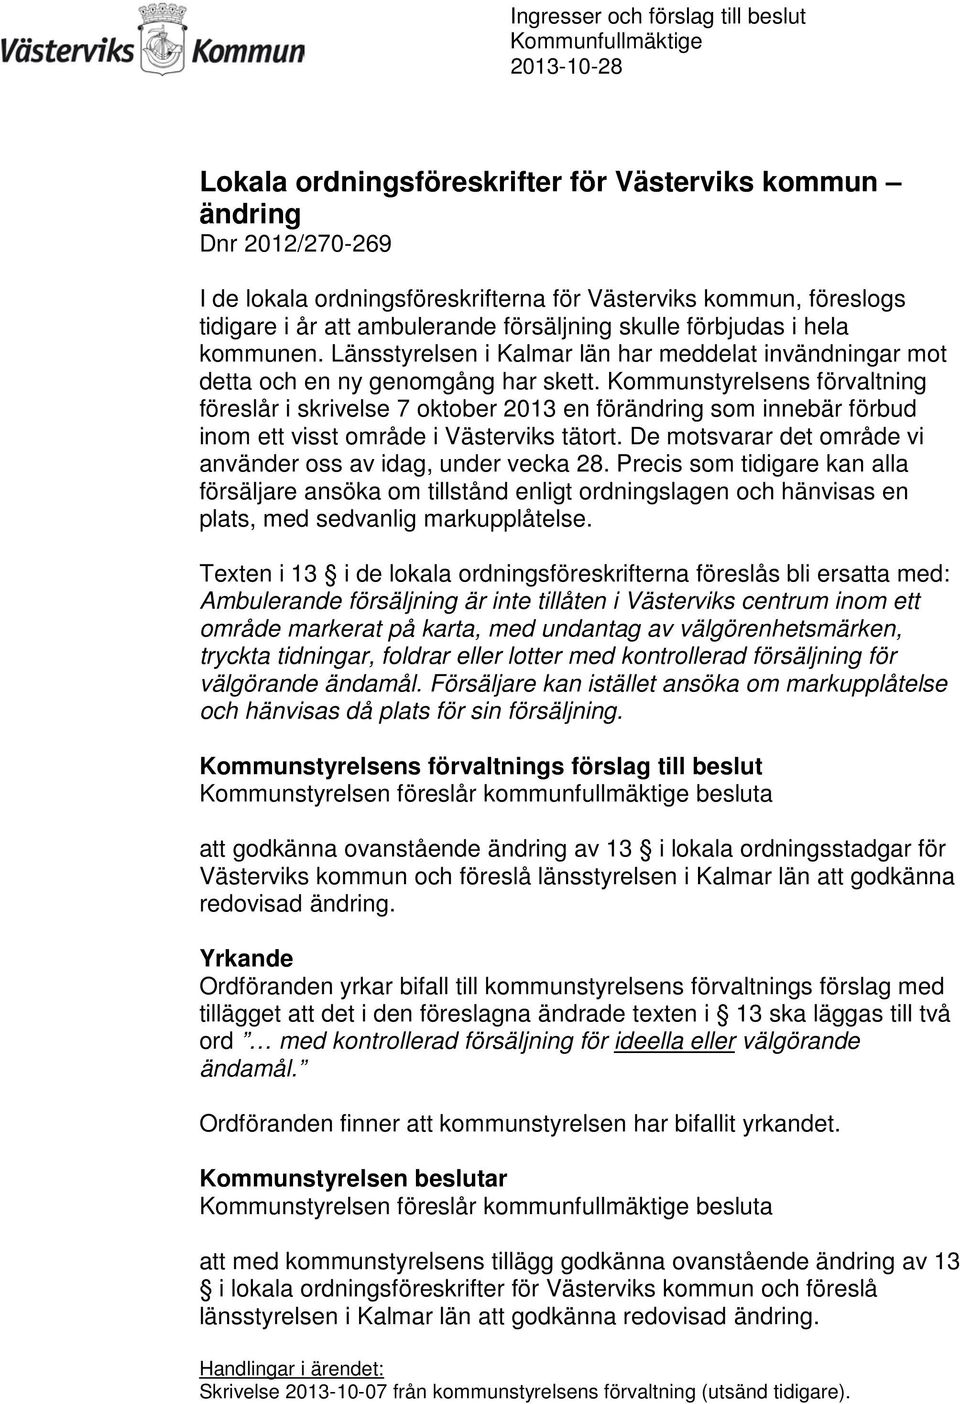 Kommunstyrelsens förvaltning föreslår i skrivelse 7 oktober 2013 en förändring som innebär förbud inom ett visst område i Västerviks tätort.